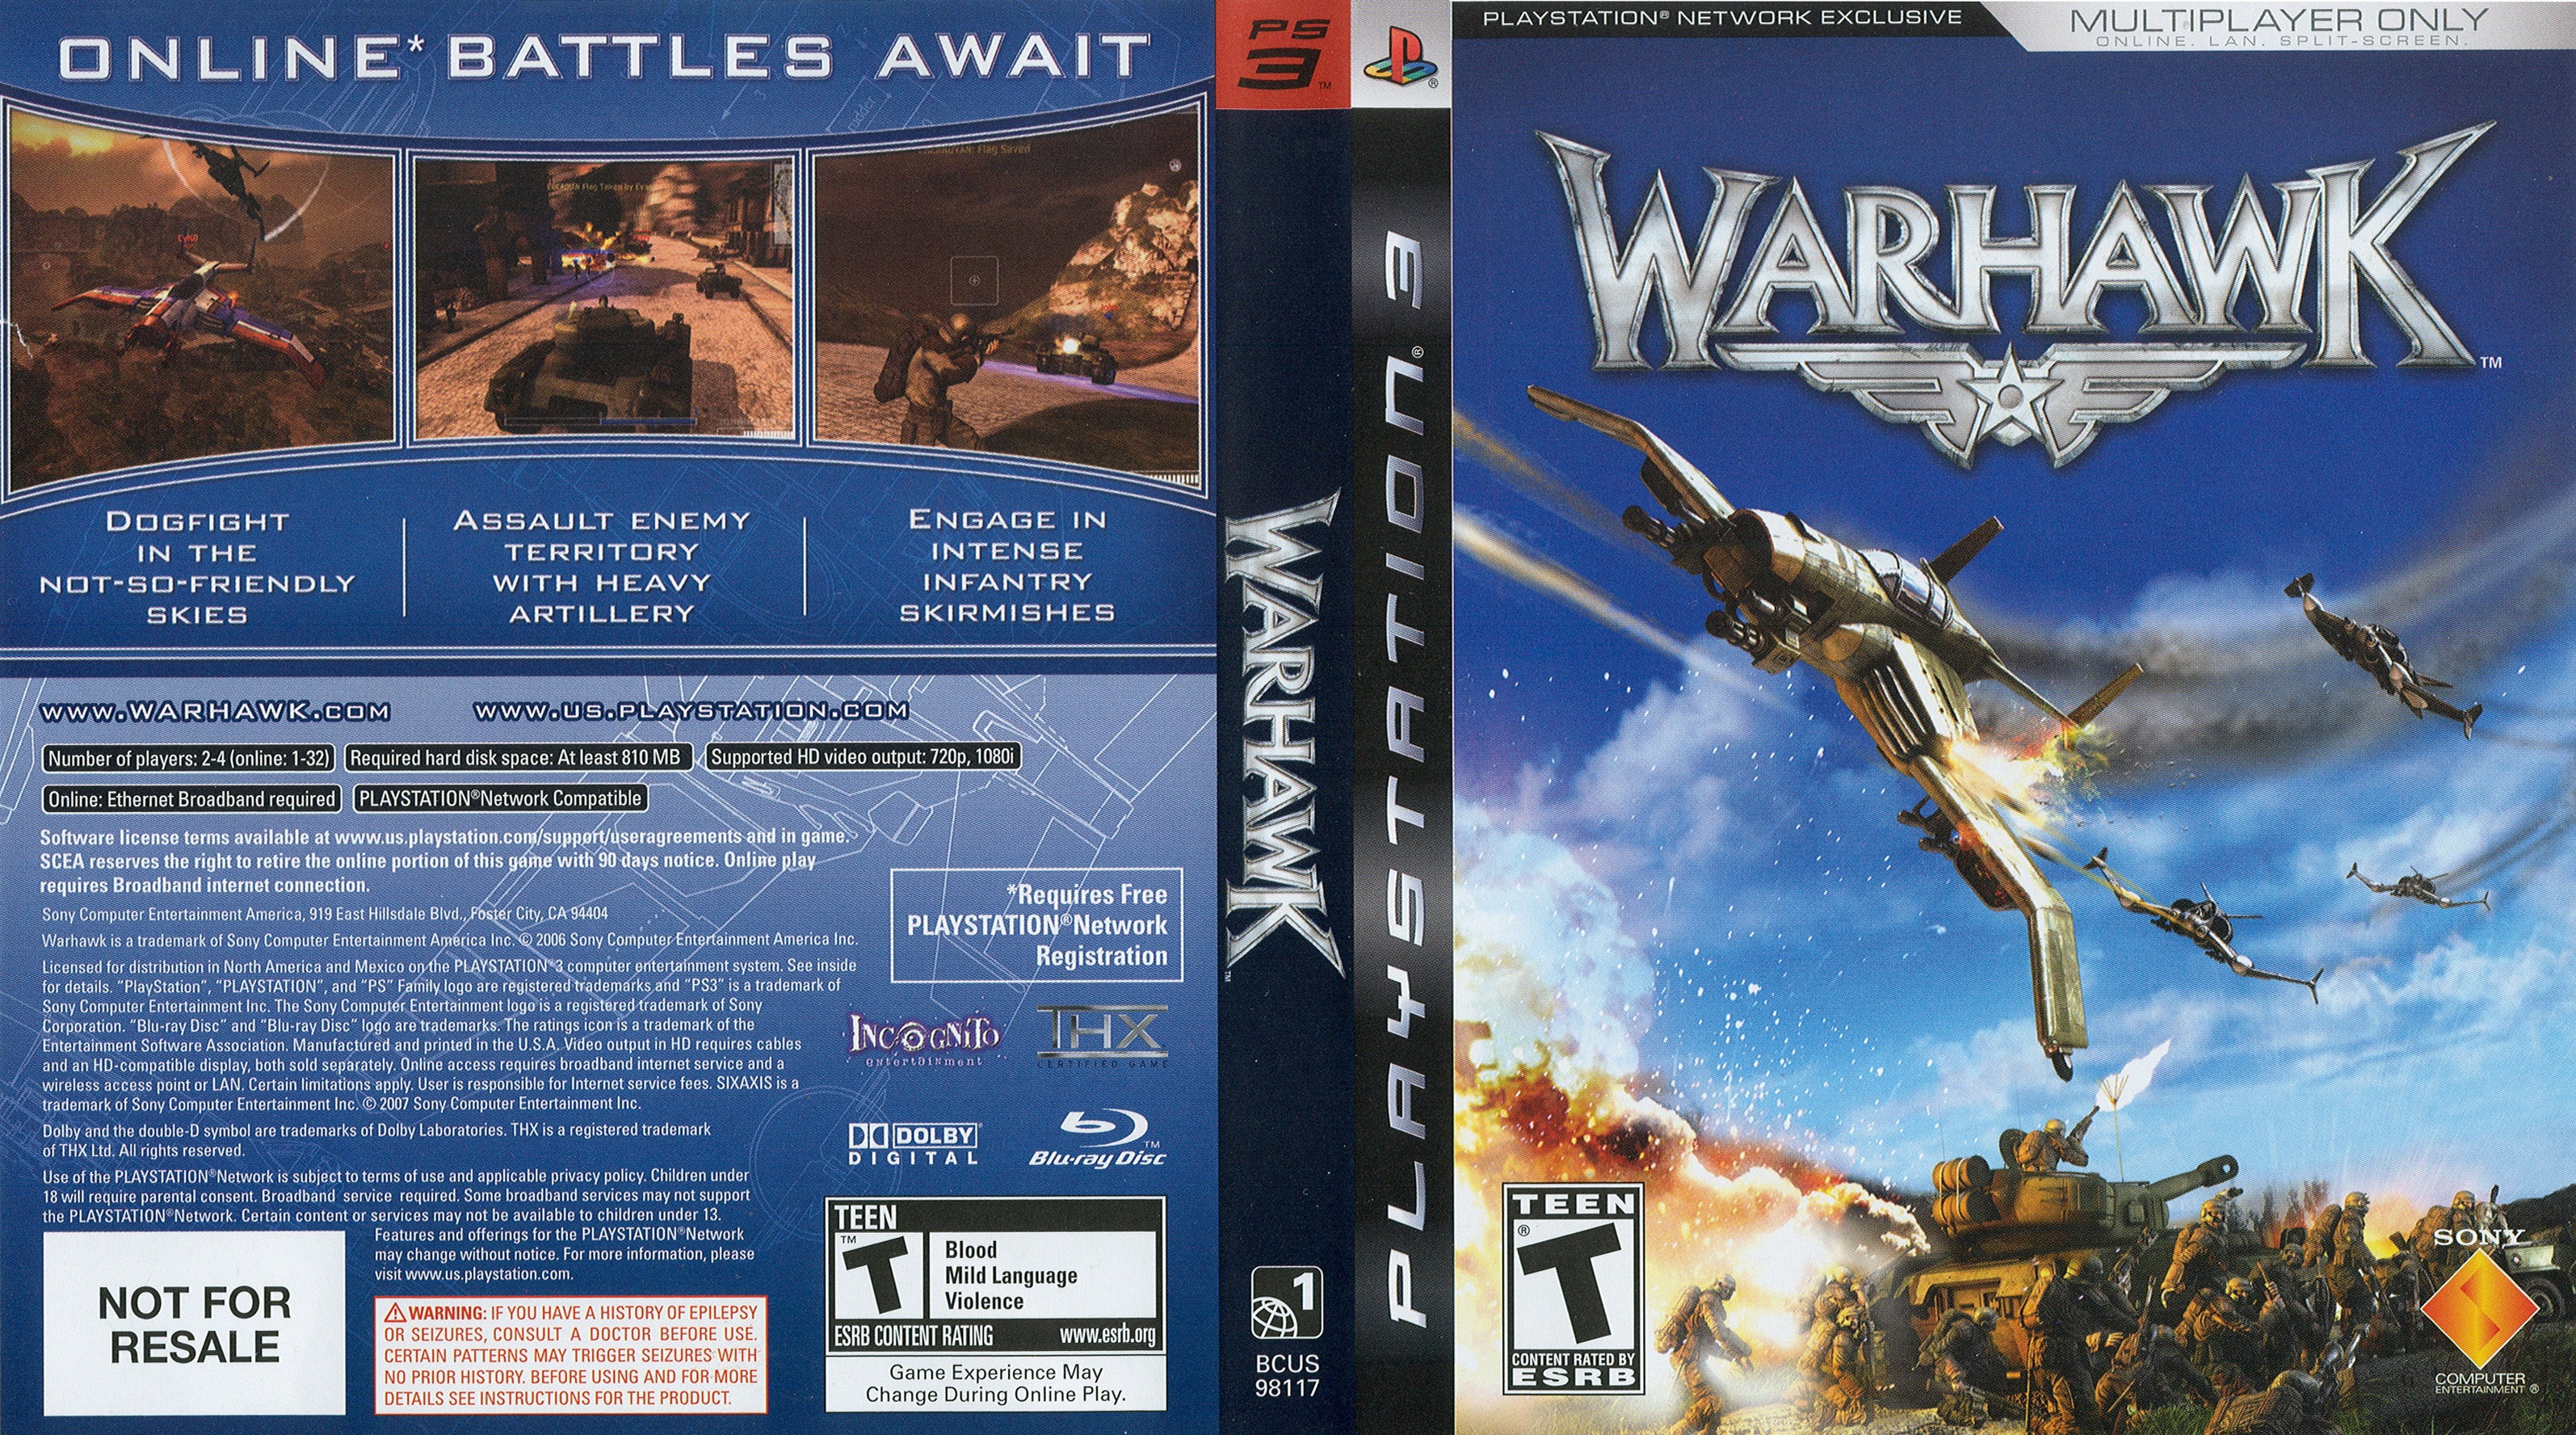 Warhawk: $39 on 8/28 (PS3)